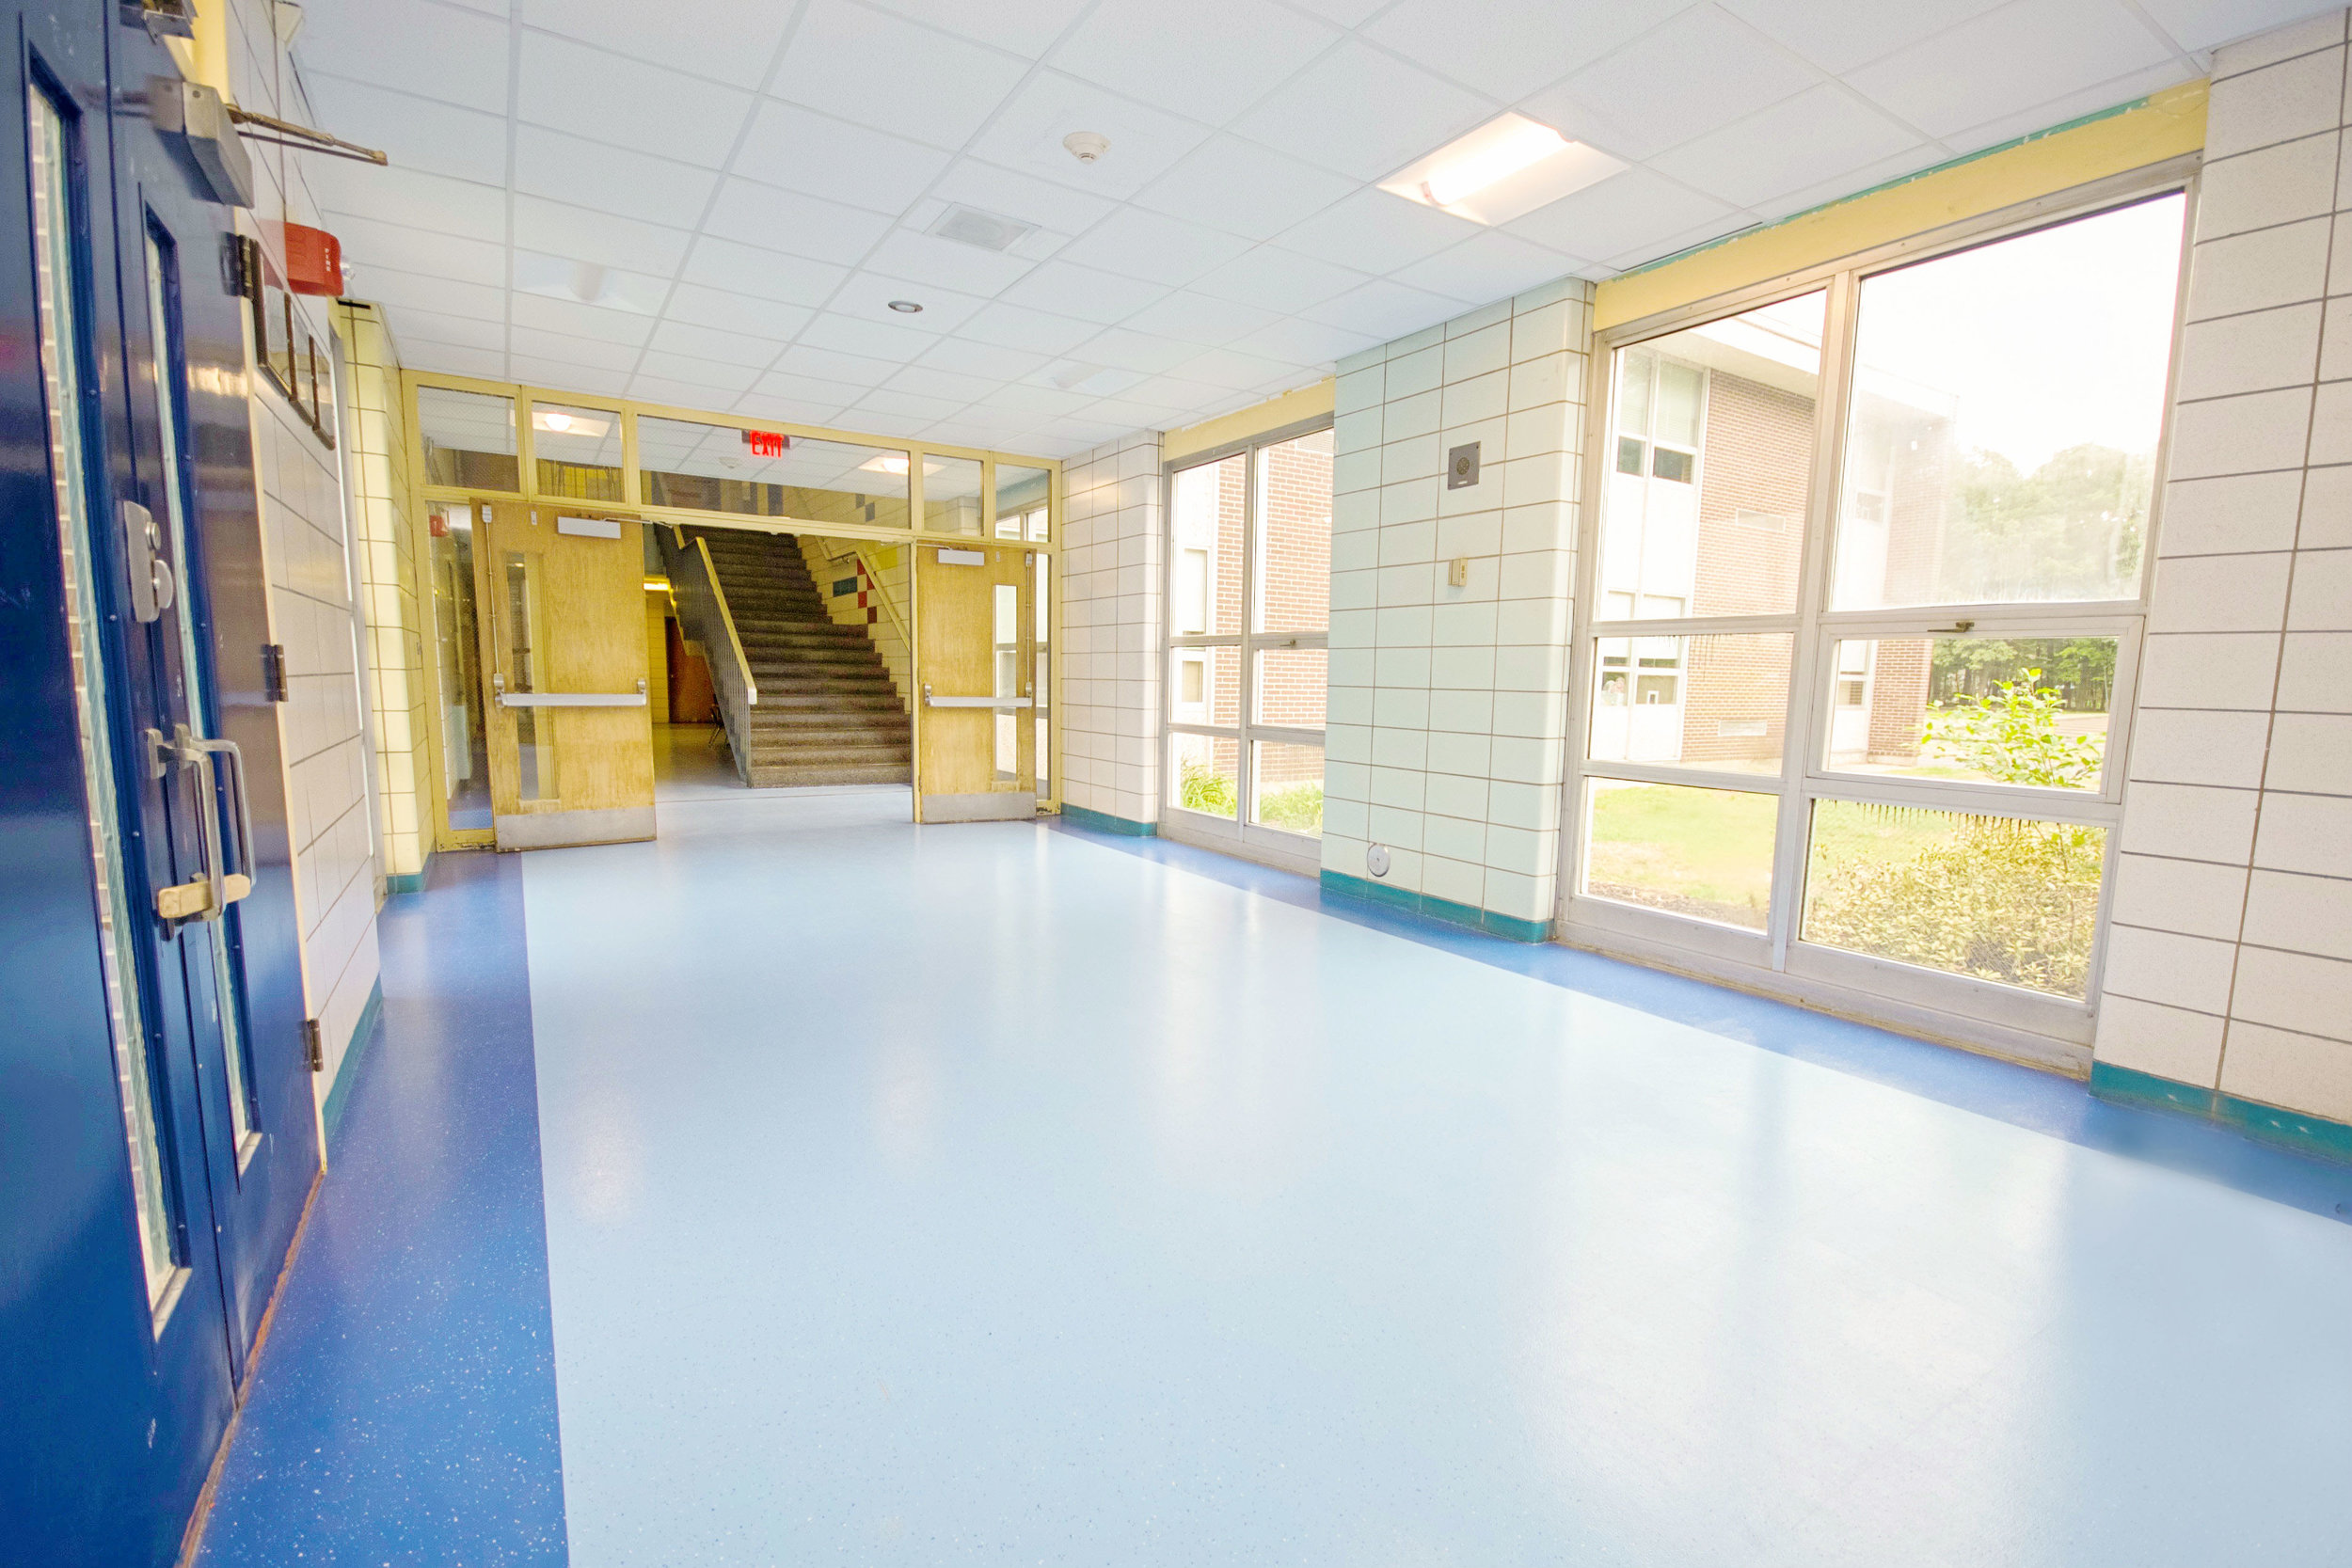 Billerica Public Schools + Atkinson Carpet & Flooring